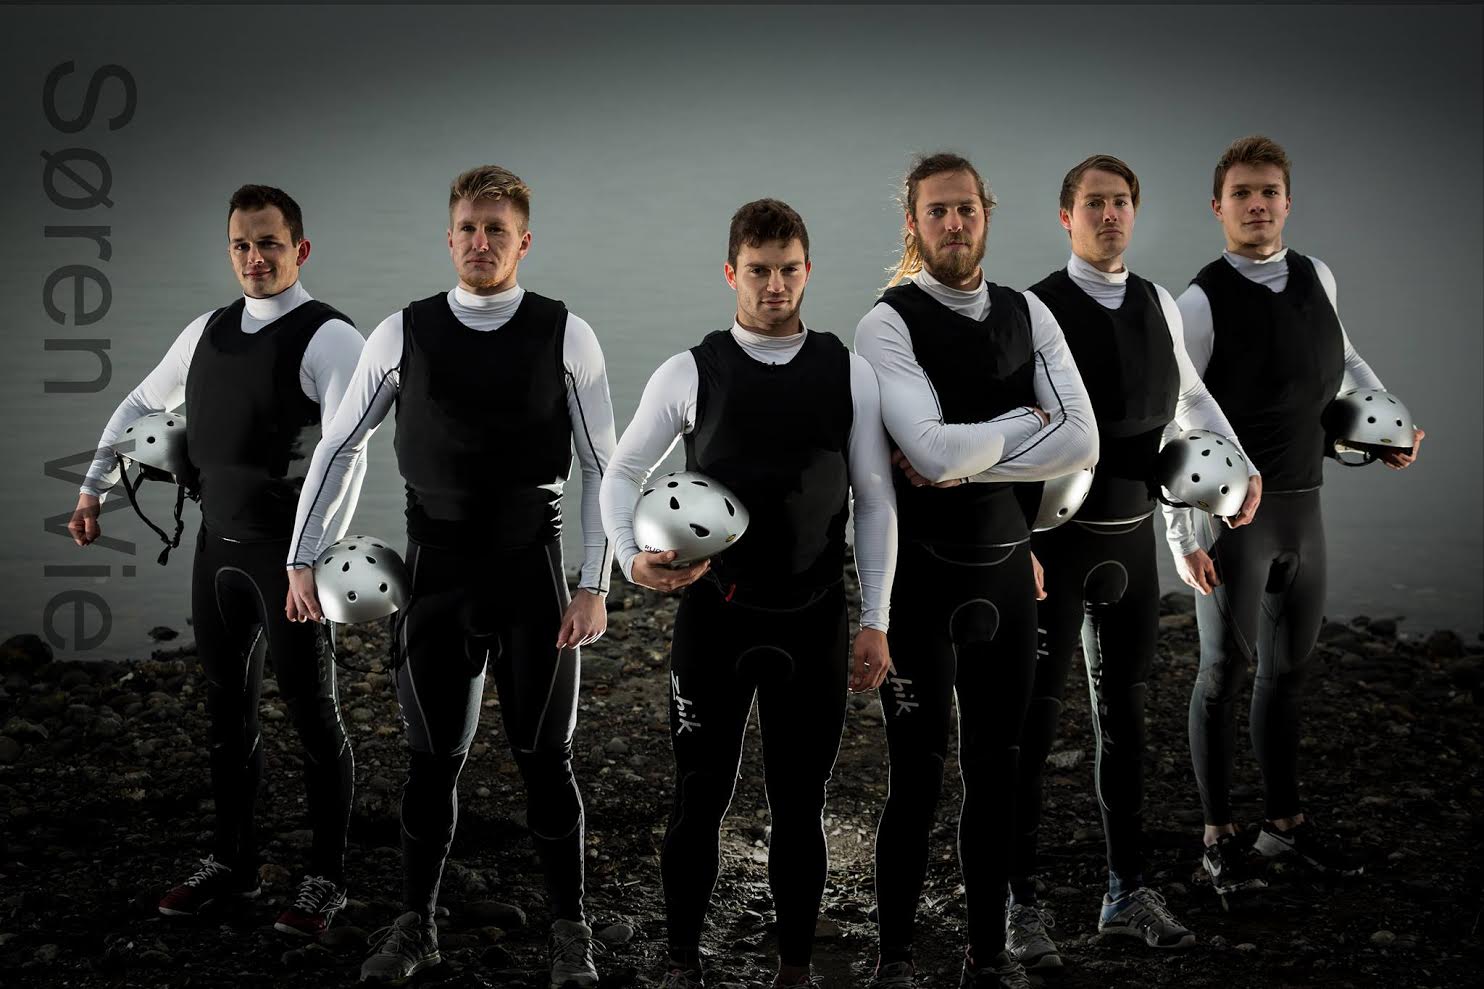 Fra venstre: Anders Kjær Kronborg, Stig Steinfurth, Mads Emil Lübeck, Daniel Bjørnholt, Nicolaj Bjørnholt og Christopher Falholt. Foto: Søren Wiegand